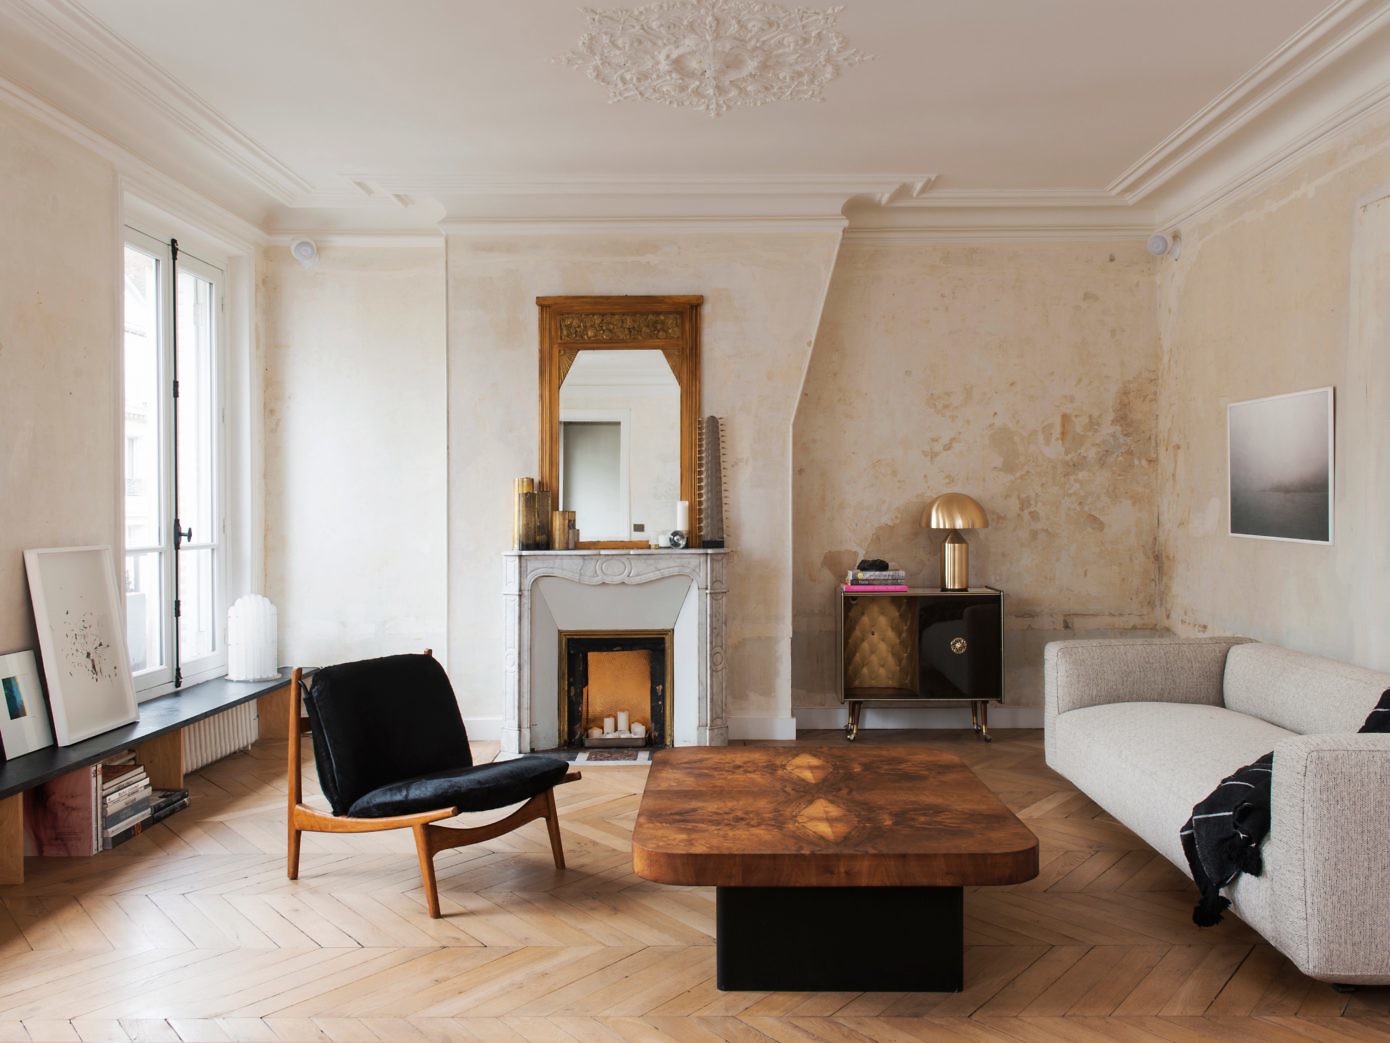 Apartment in Paris by Diego Delgado Elias